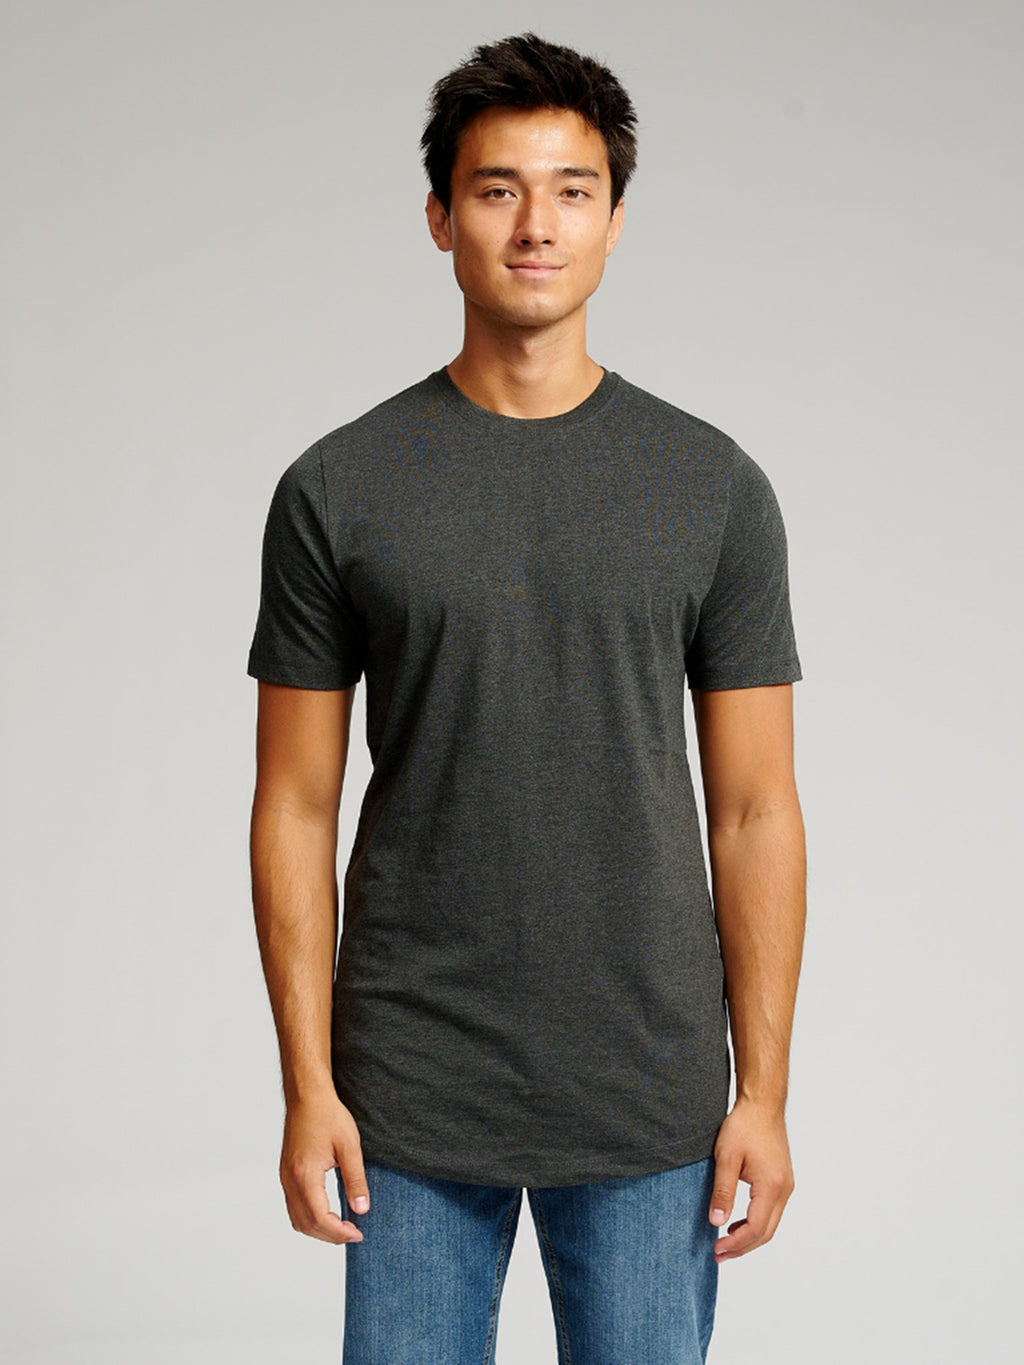 Camiseta larga - Melange gris oscuro